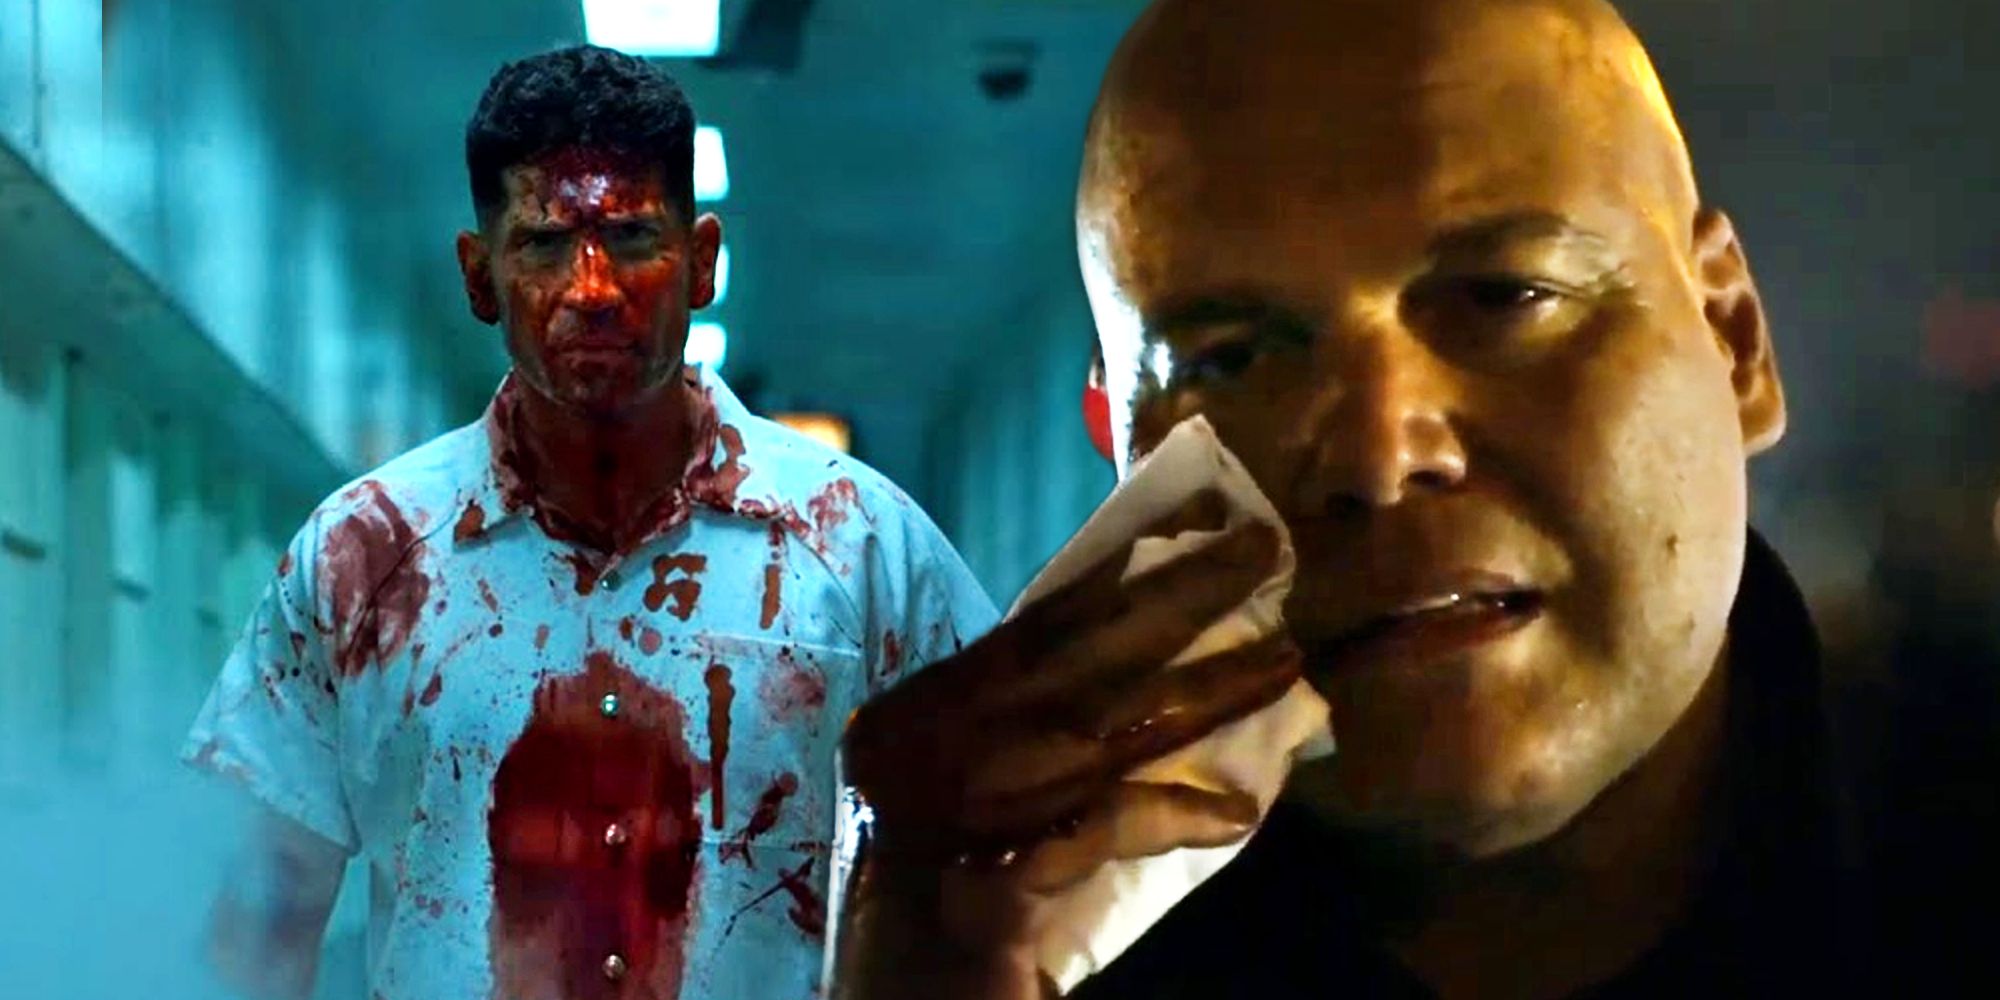 Los actos violentos de Kingpin y The Punisher en los programas de Netflix de Marvel